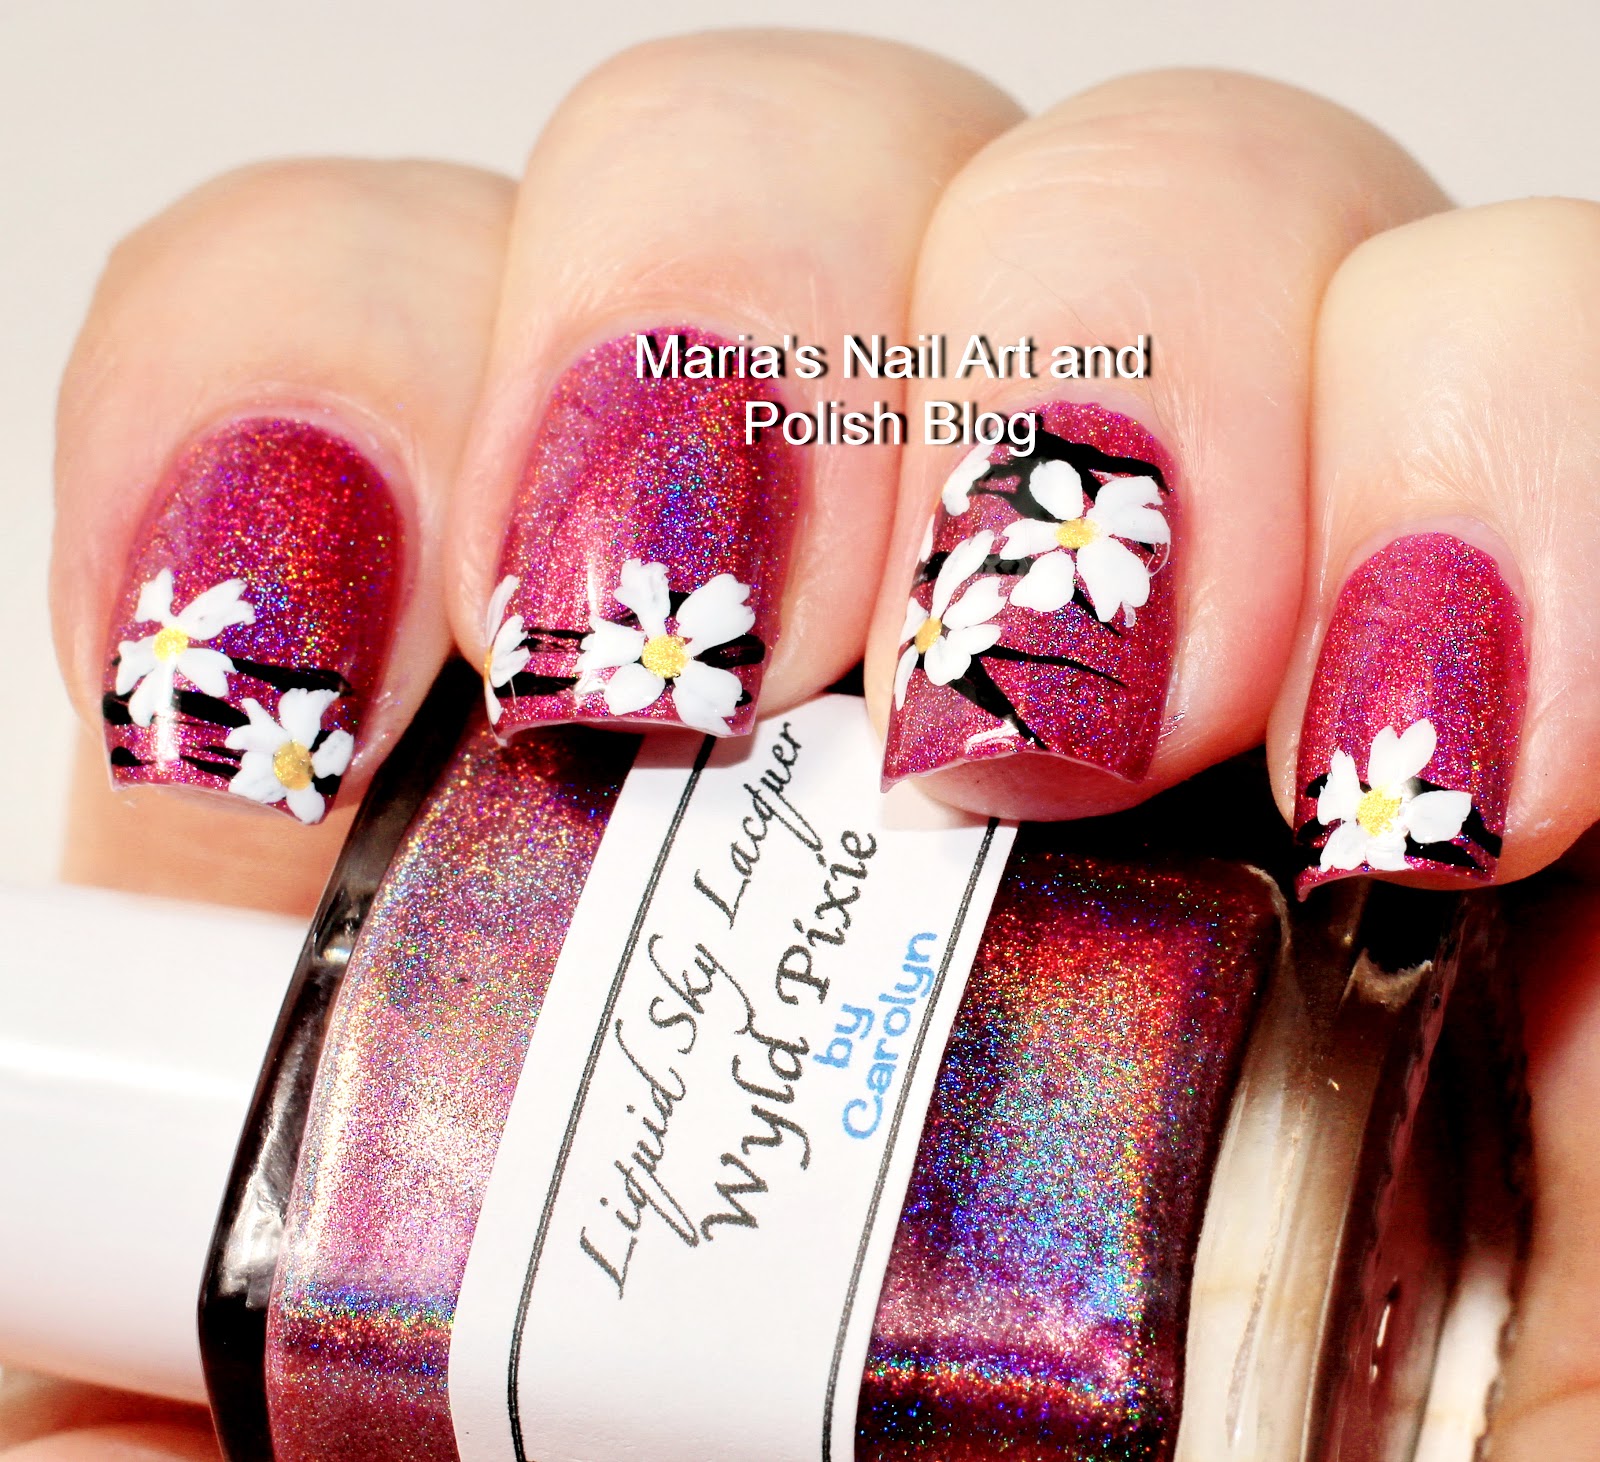 Marias Nail Art and Polish Blog: Black and white floral nail art on ...